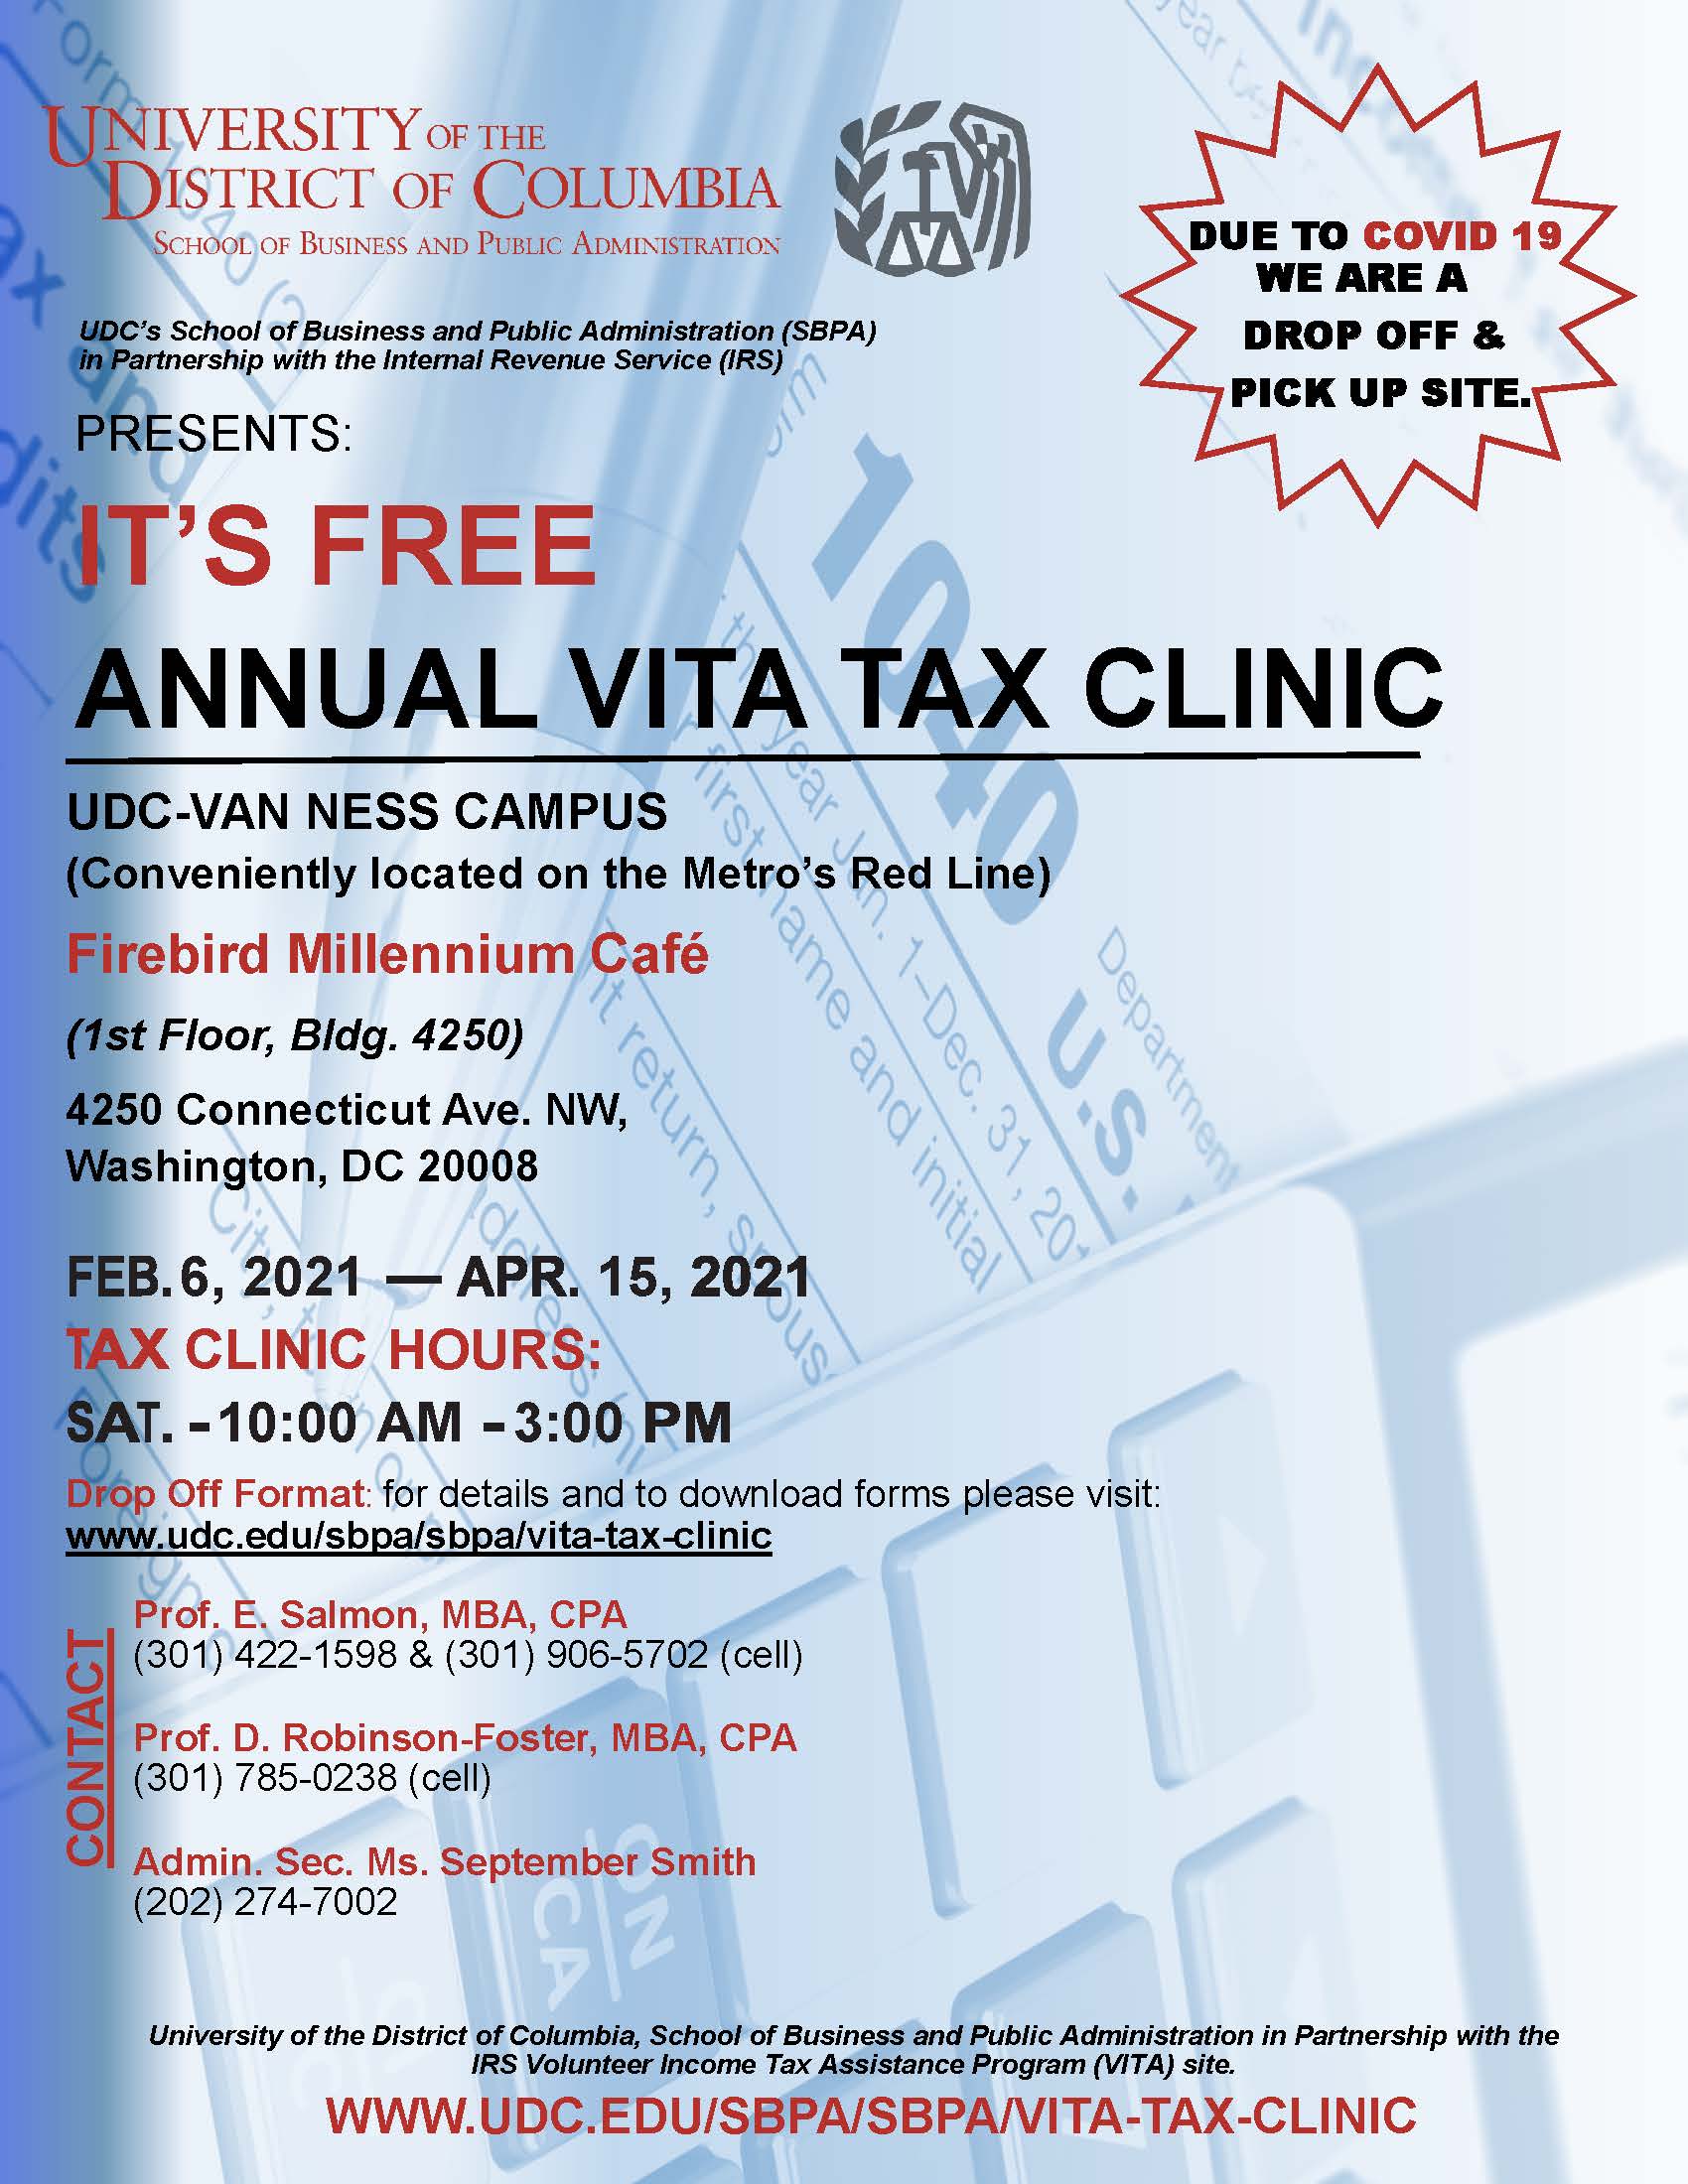 2021 VITA Tax Clinic – February 6th – April 15th, 2021